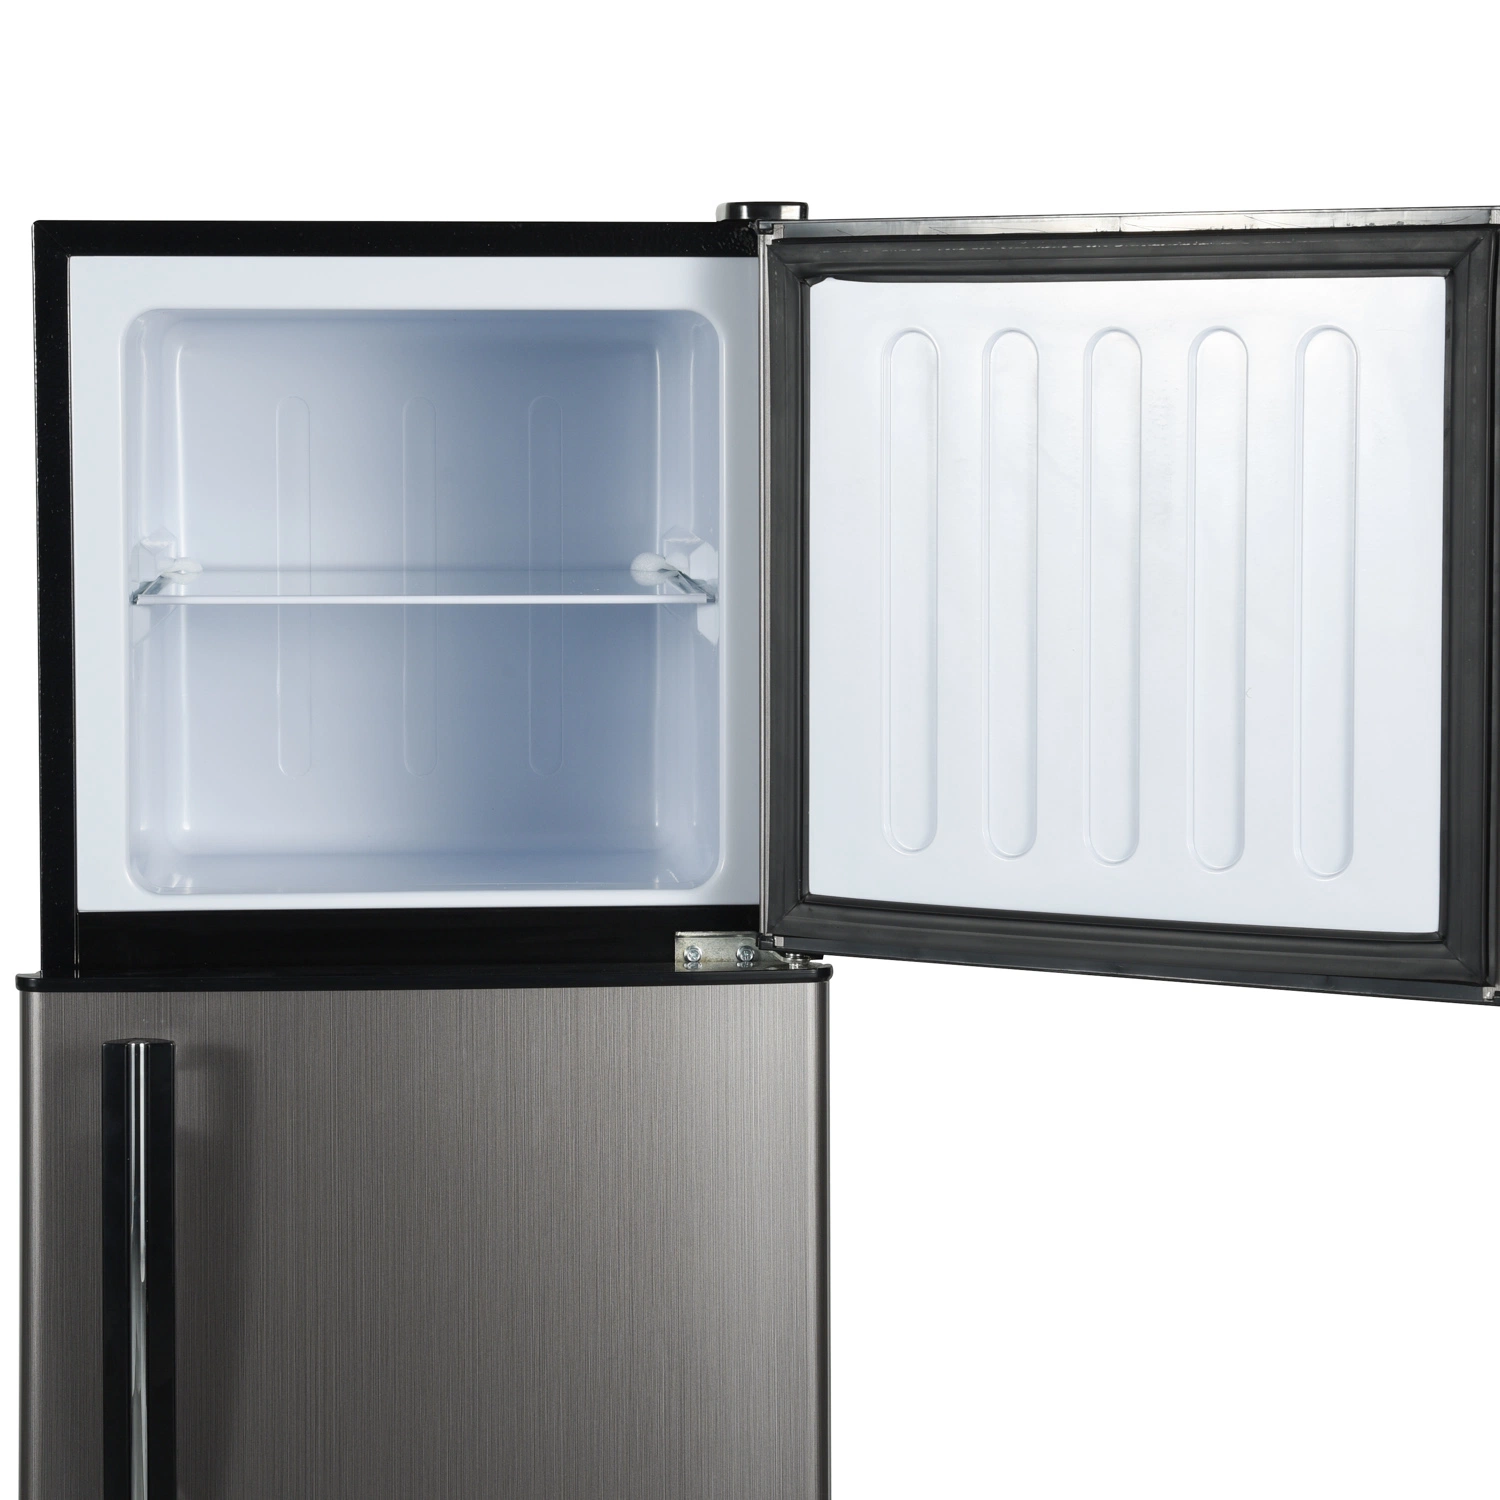 Bcd-138 Moderne Elektrische Doppeltür Kaltgetränk Küche Kühlschrank Startseite Gerätekühlschränke